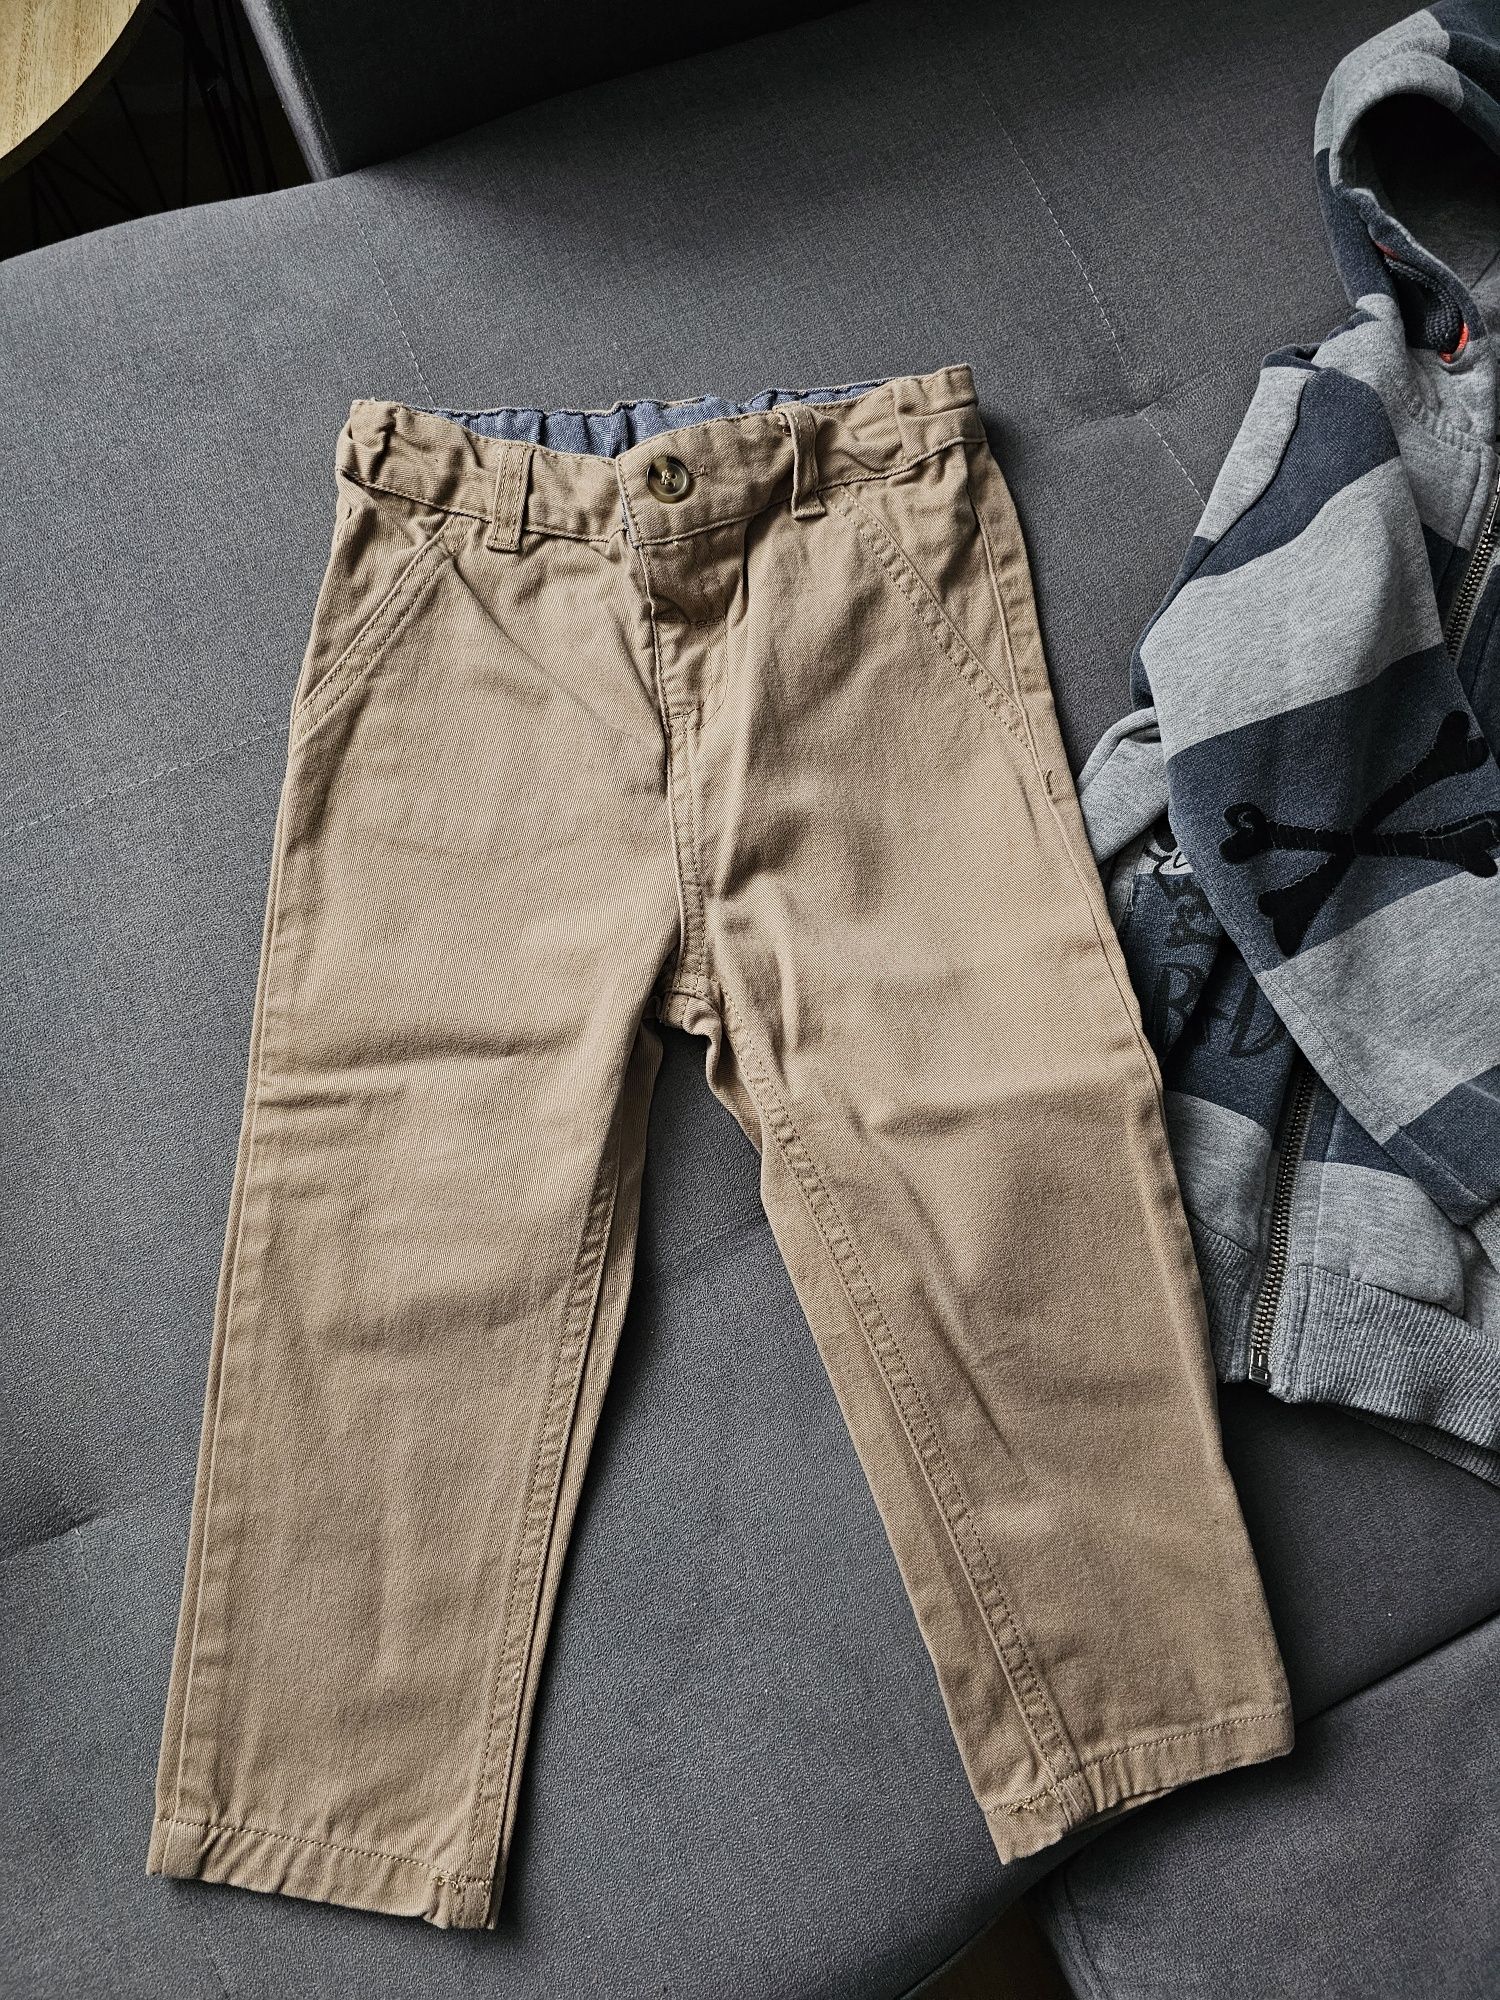 Spodnie + Bluza na Chłopca r.98